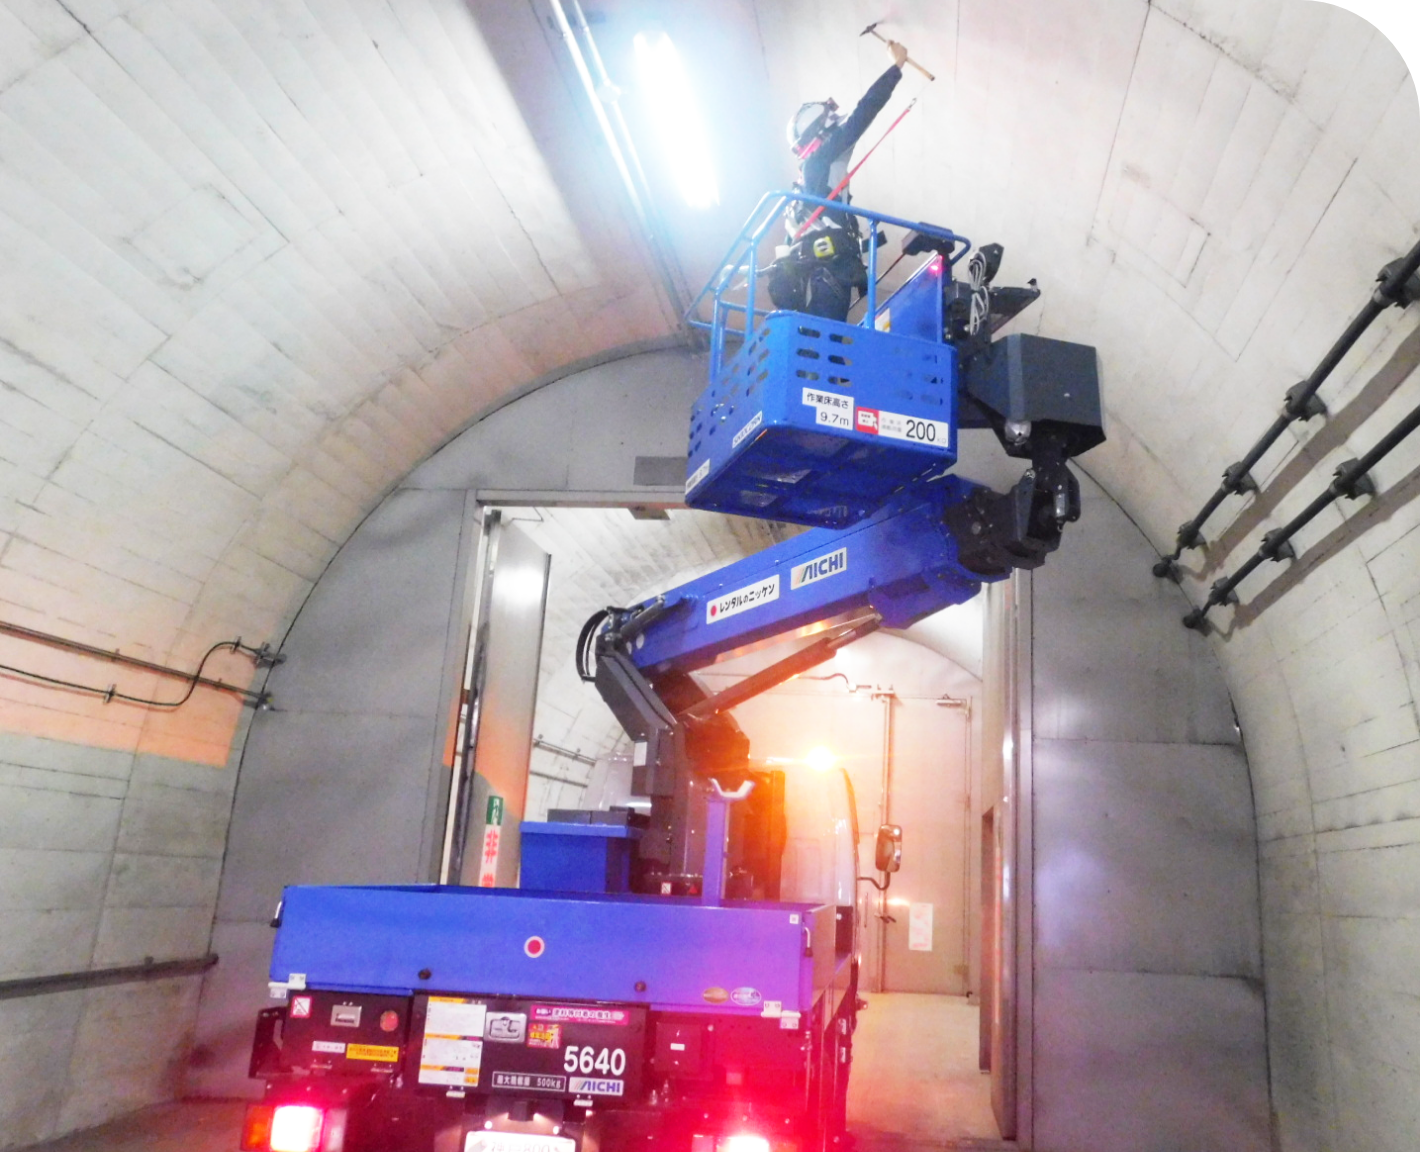 品質重視の安心感と信頼感を提供するトンネル保全